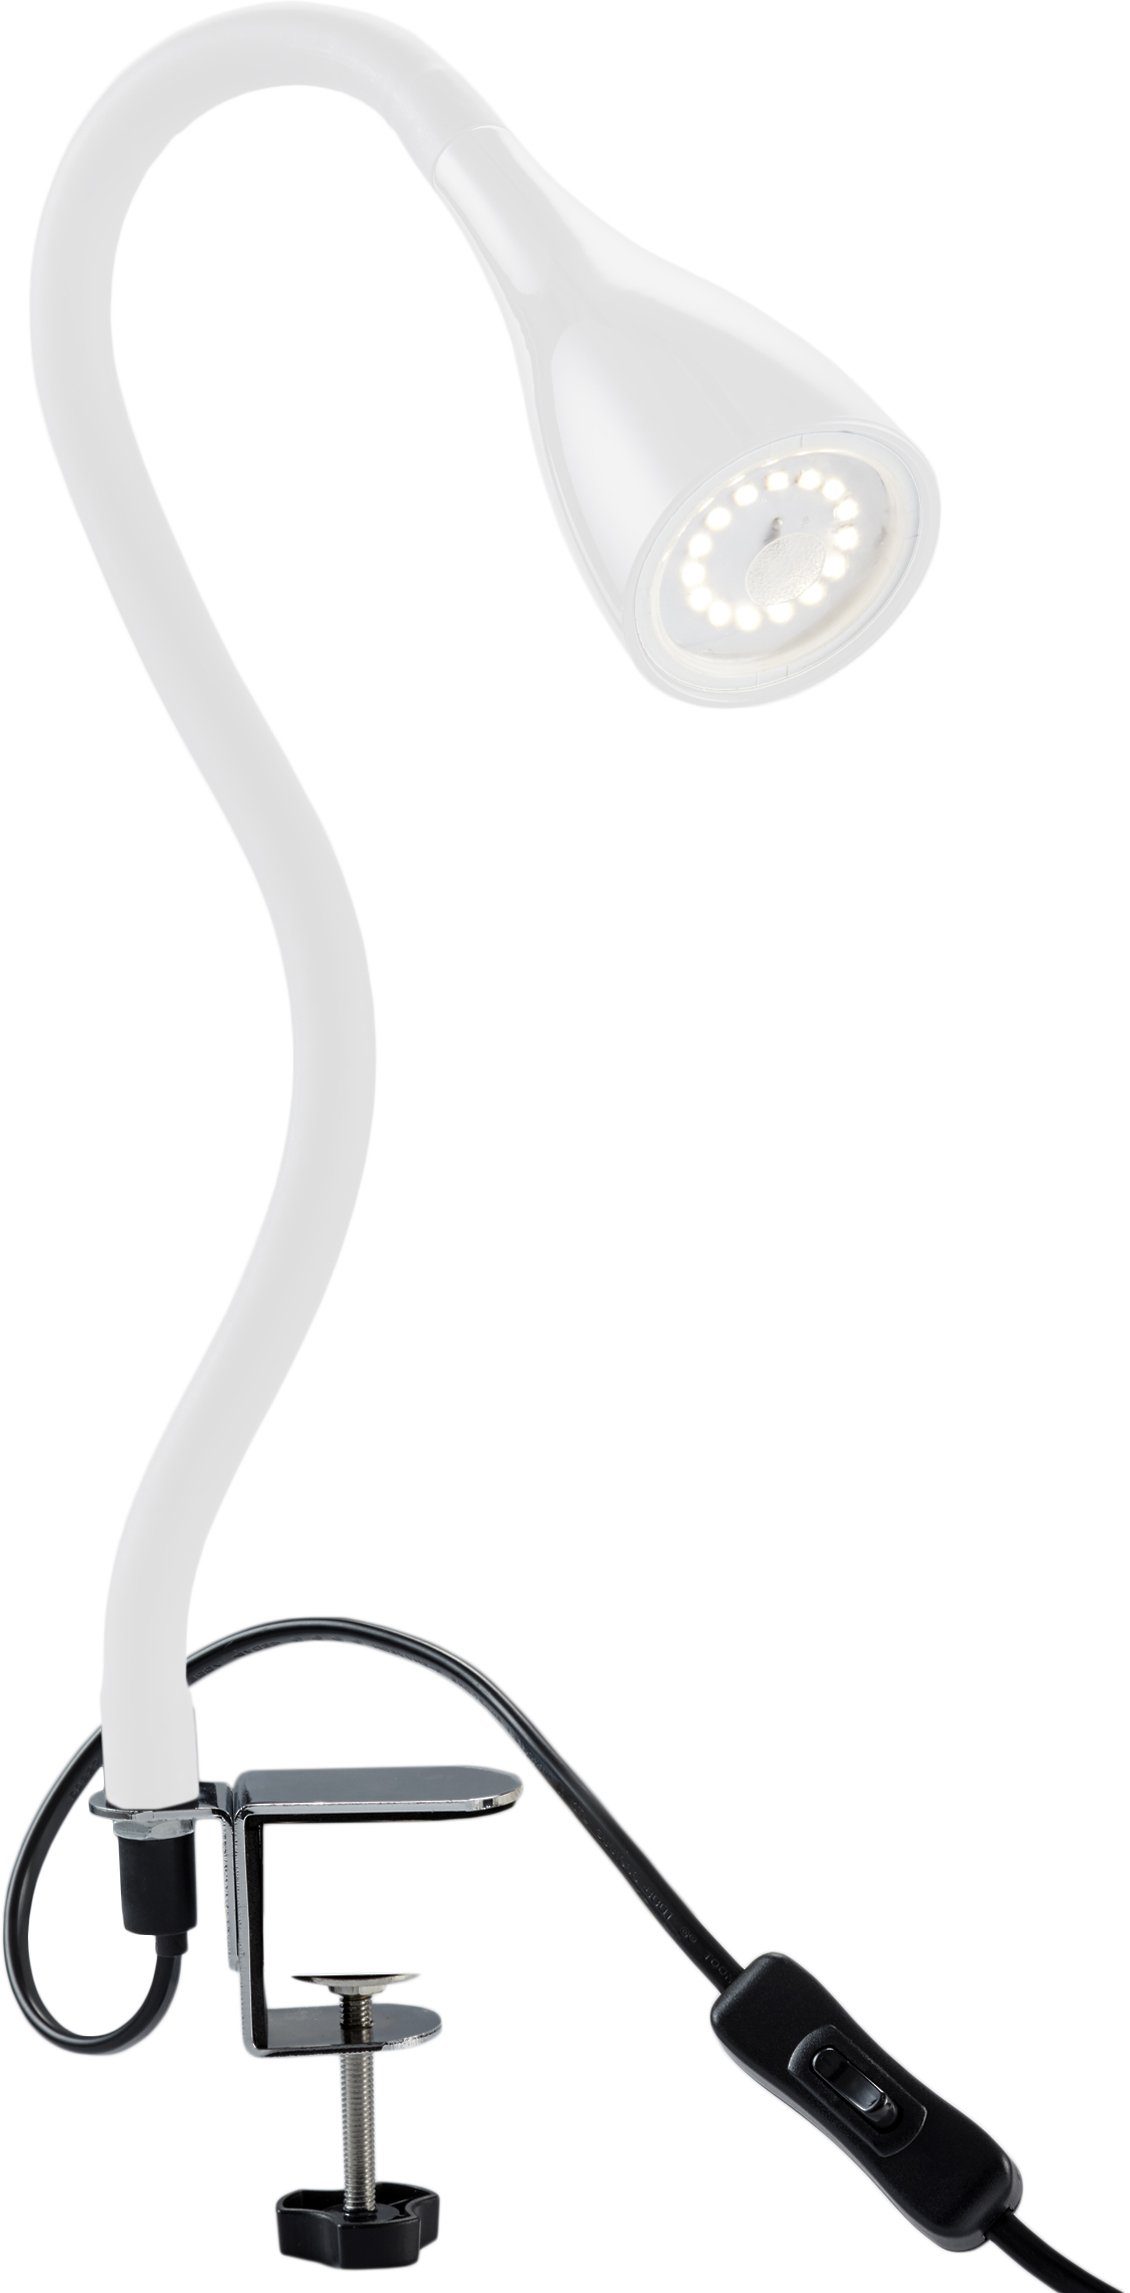 GU10 Lampenfassung mit Kabel, Bügel & Klemme - Online Shop